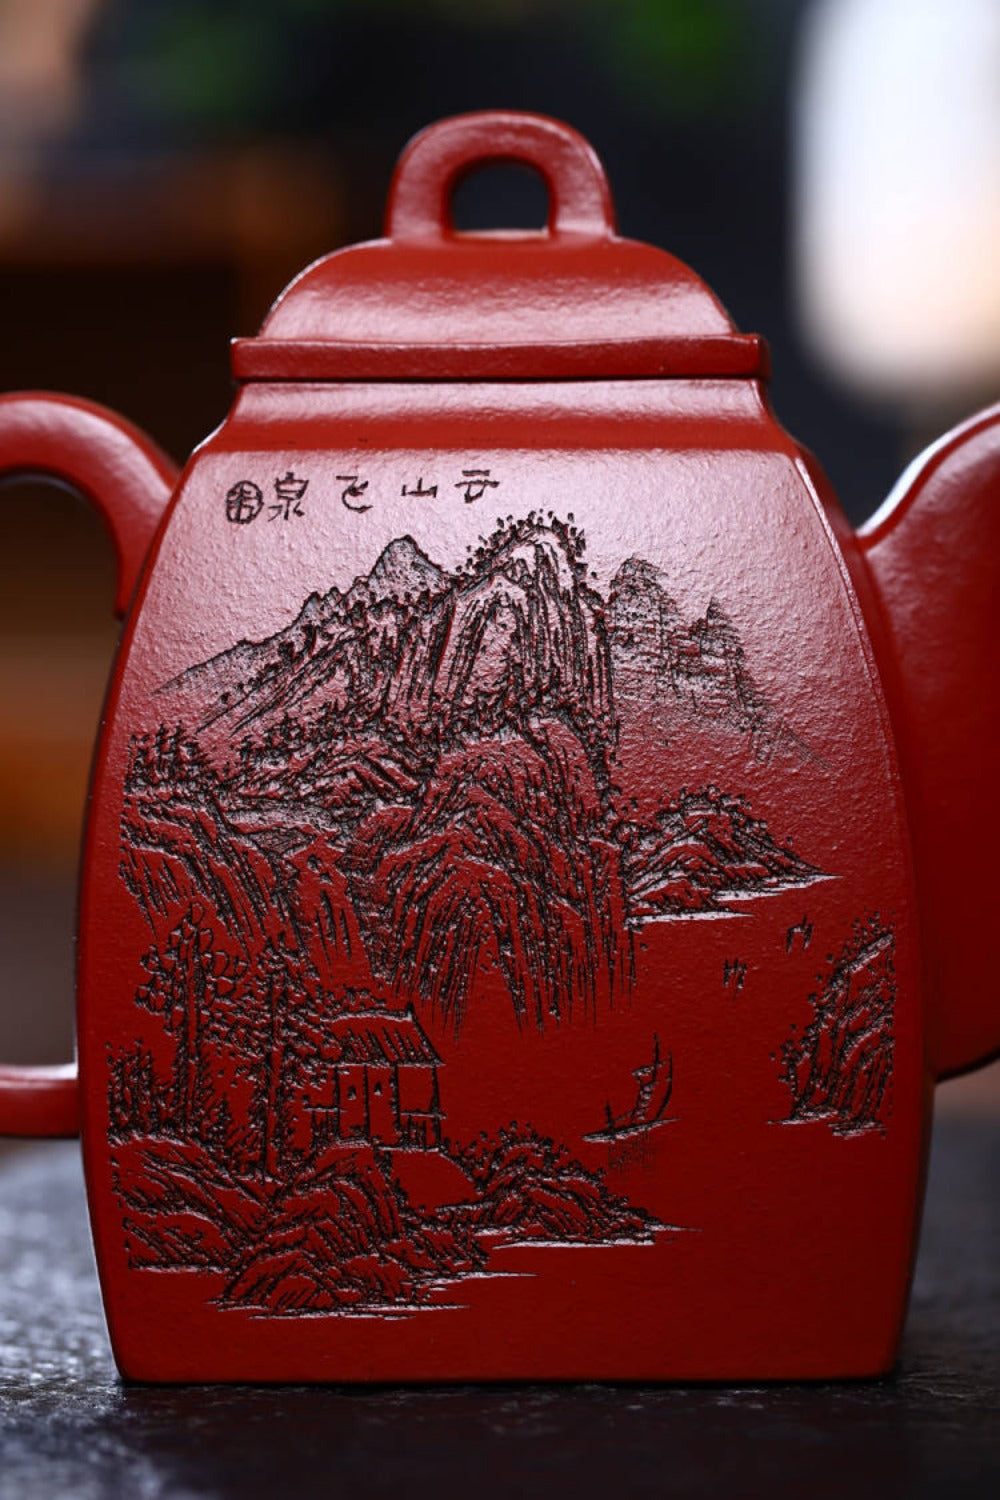 全手工宜兴紫砂茶壶 [汉方壶] (大红袍 - 350ml)
